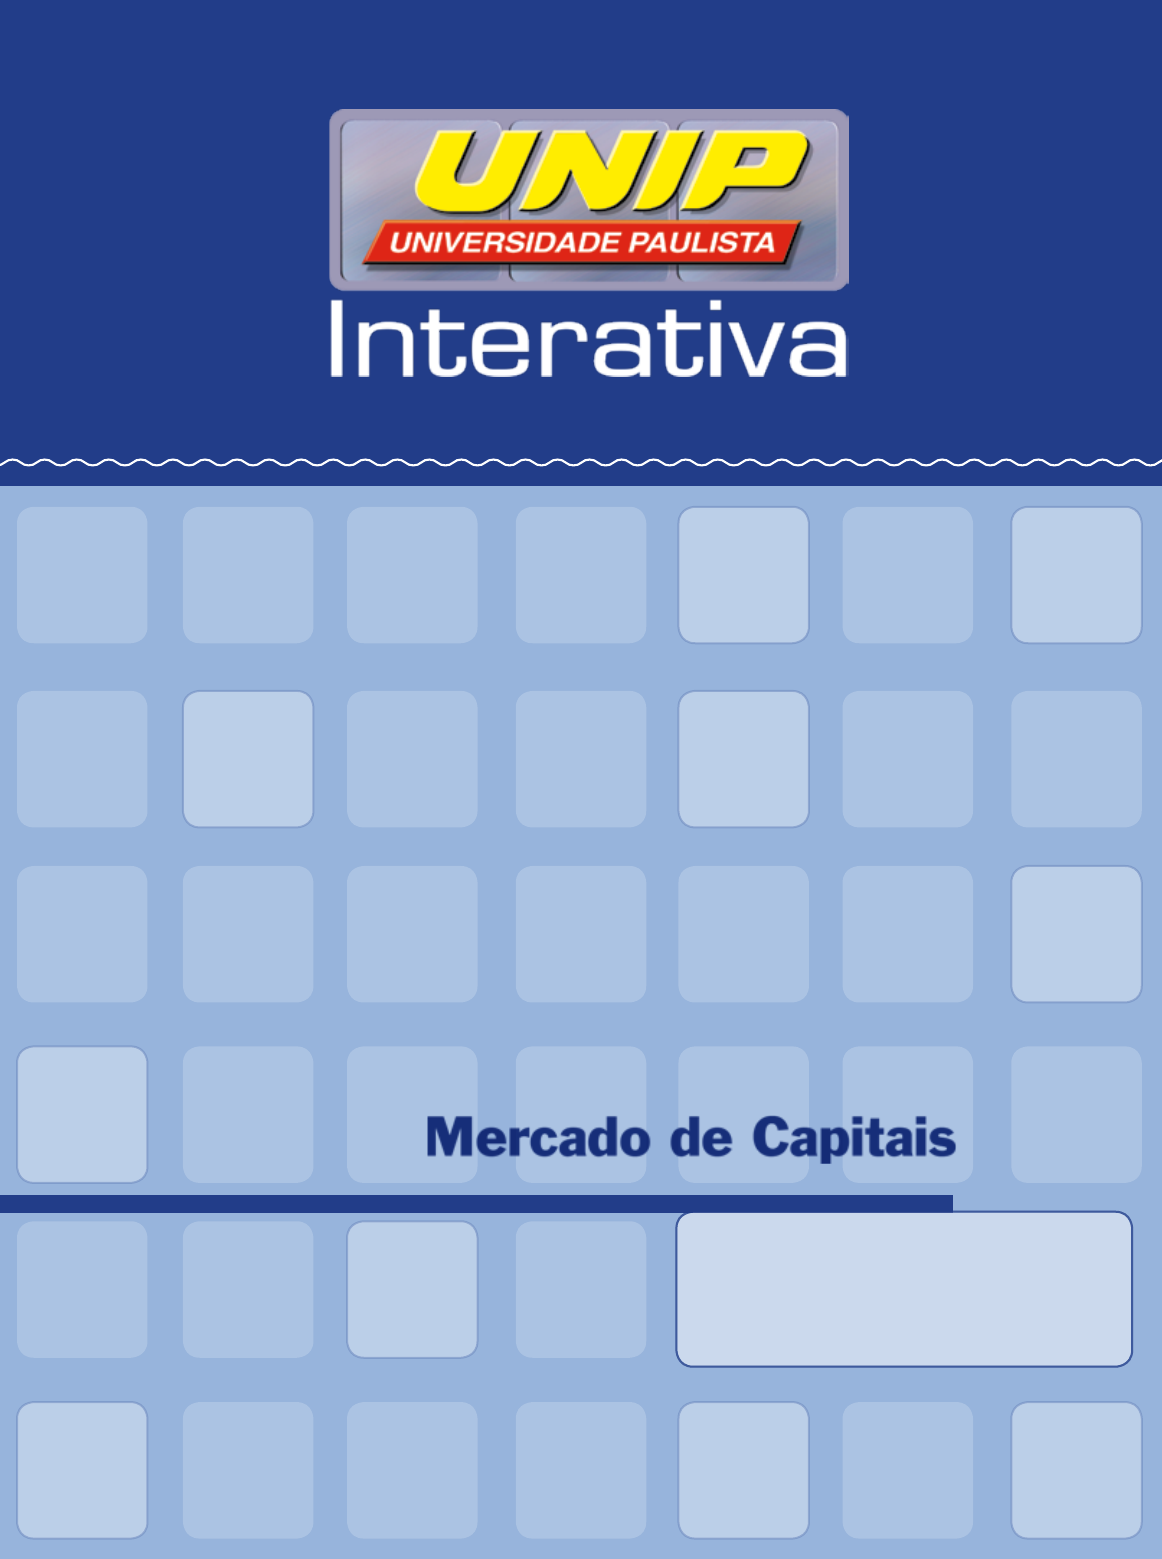 Livro TOP - DIREITO DO MERCADO DE VALORES MOBILIÁRIOS, PDF, Mercado de  capital